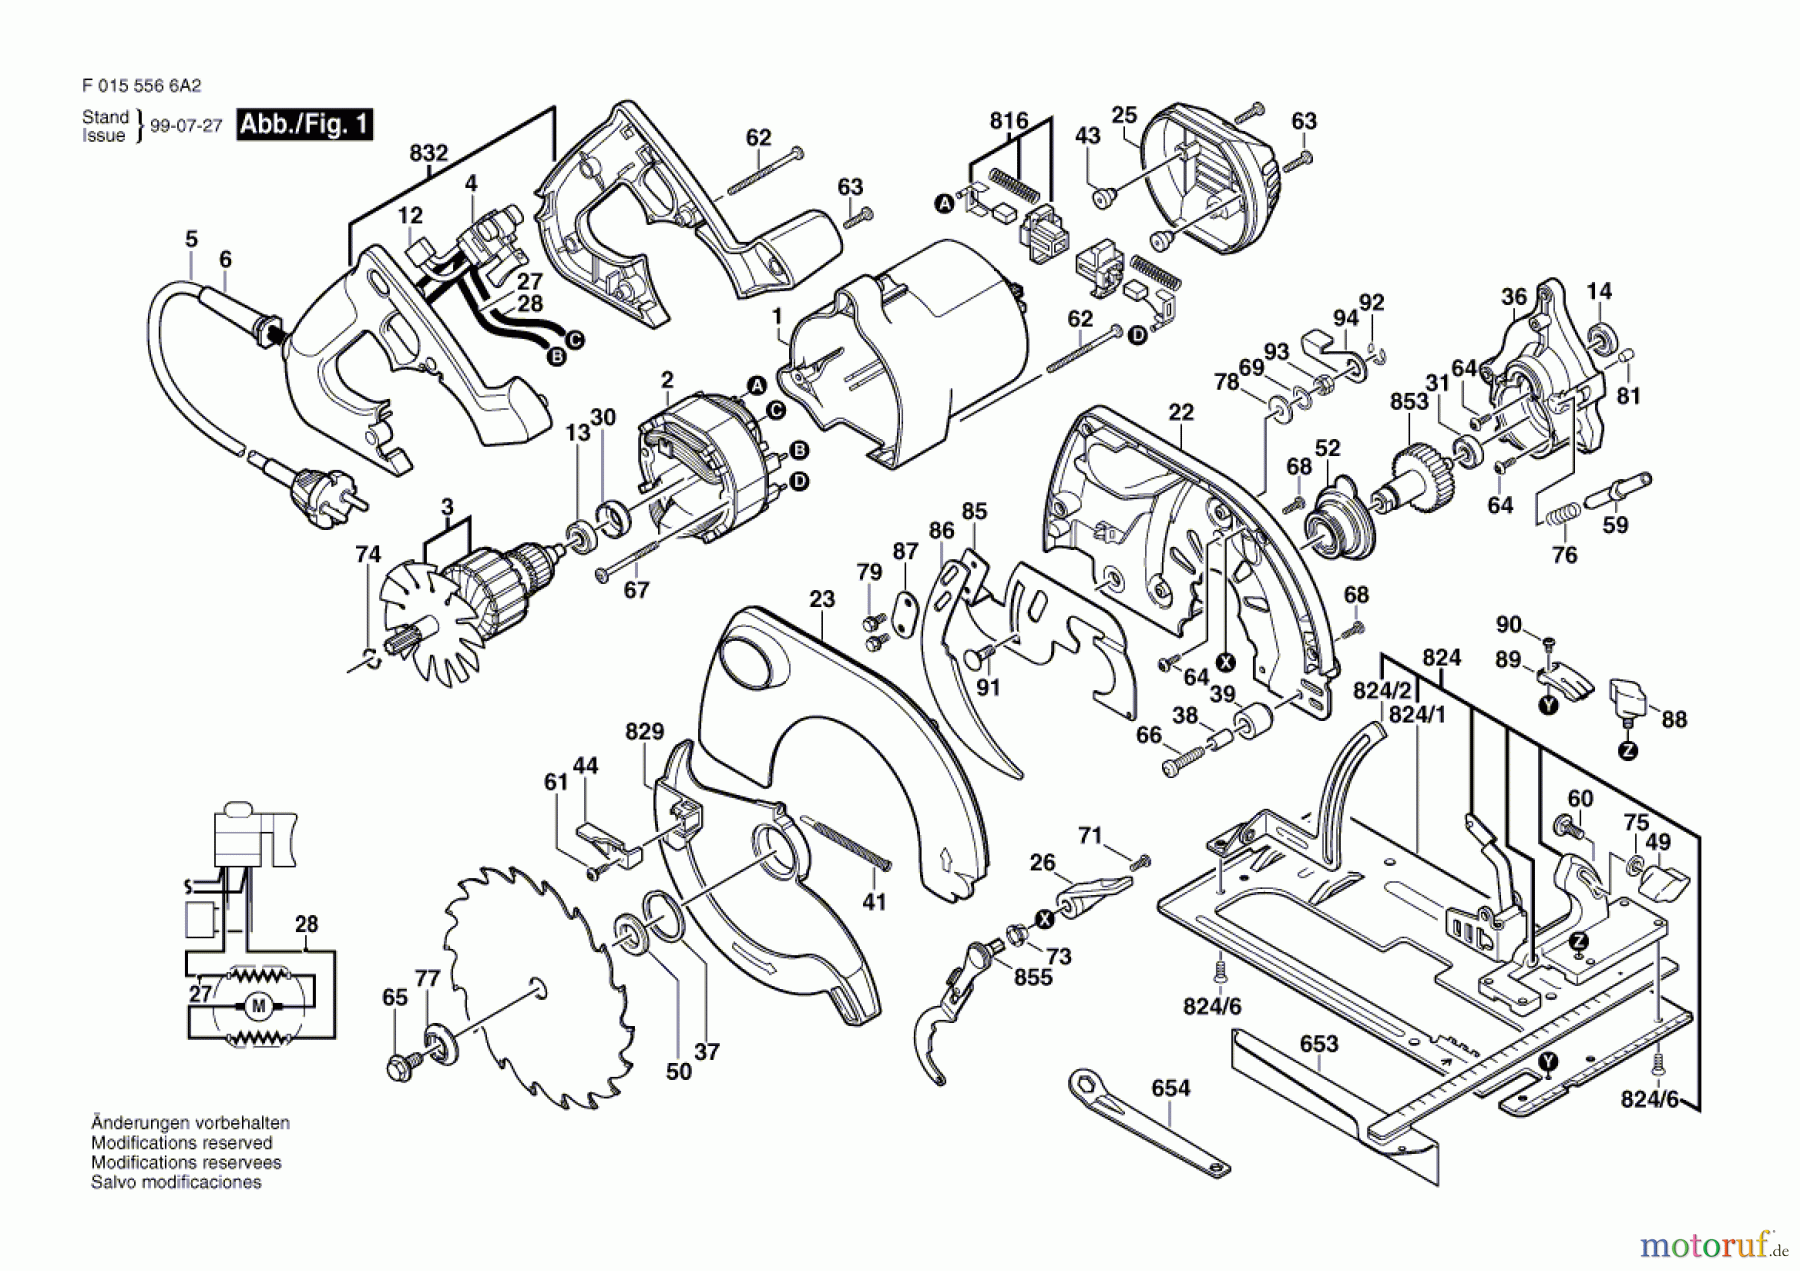  Bosch Werkzeug Kreissäge 5566 Seite 1